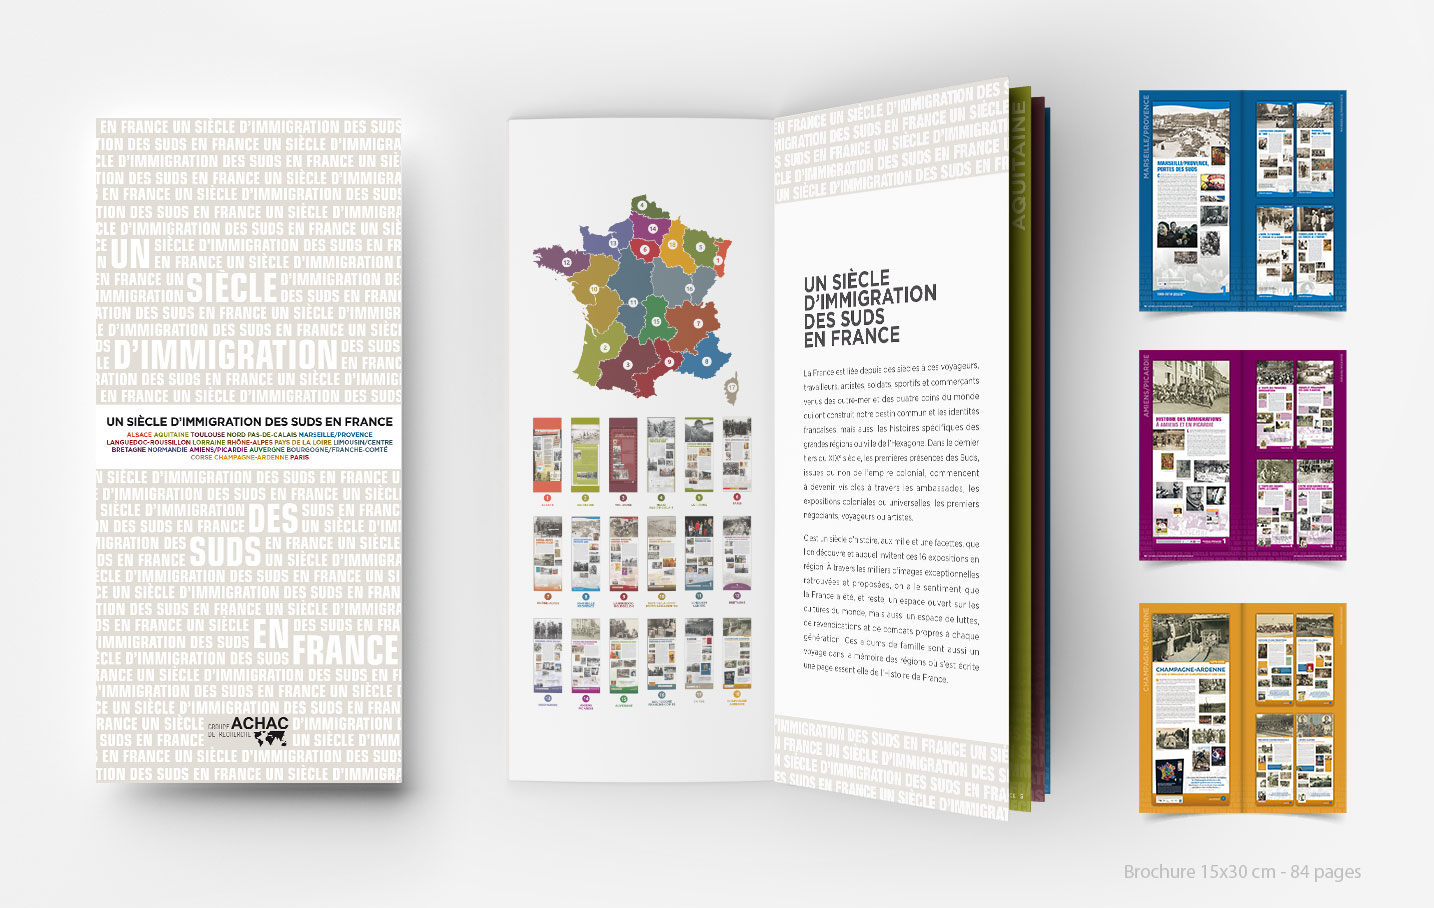 © Thierry Palau - Création brochure et exposition Achac Un siècle d'immigration des Suds en France